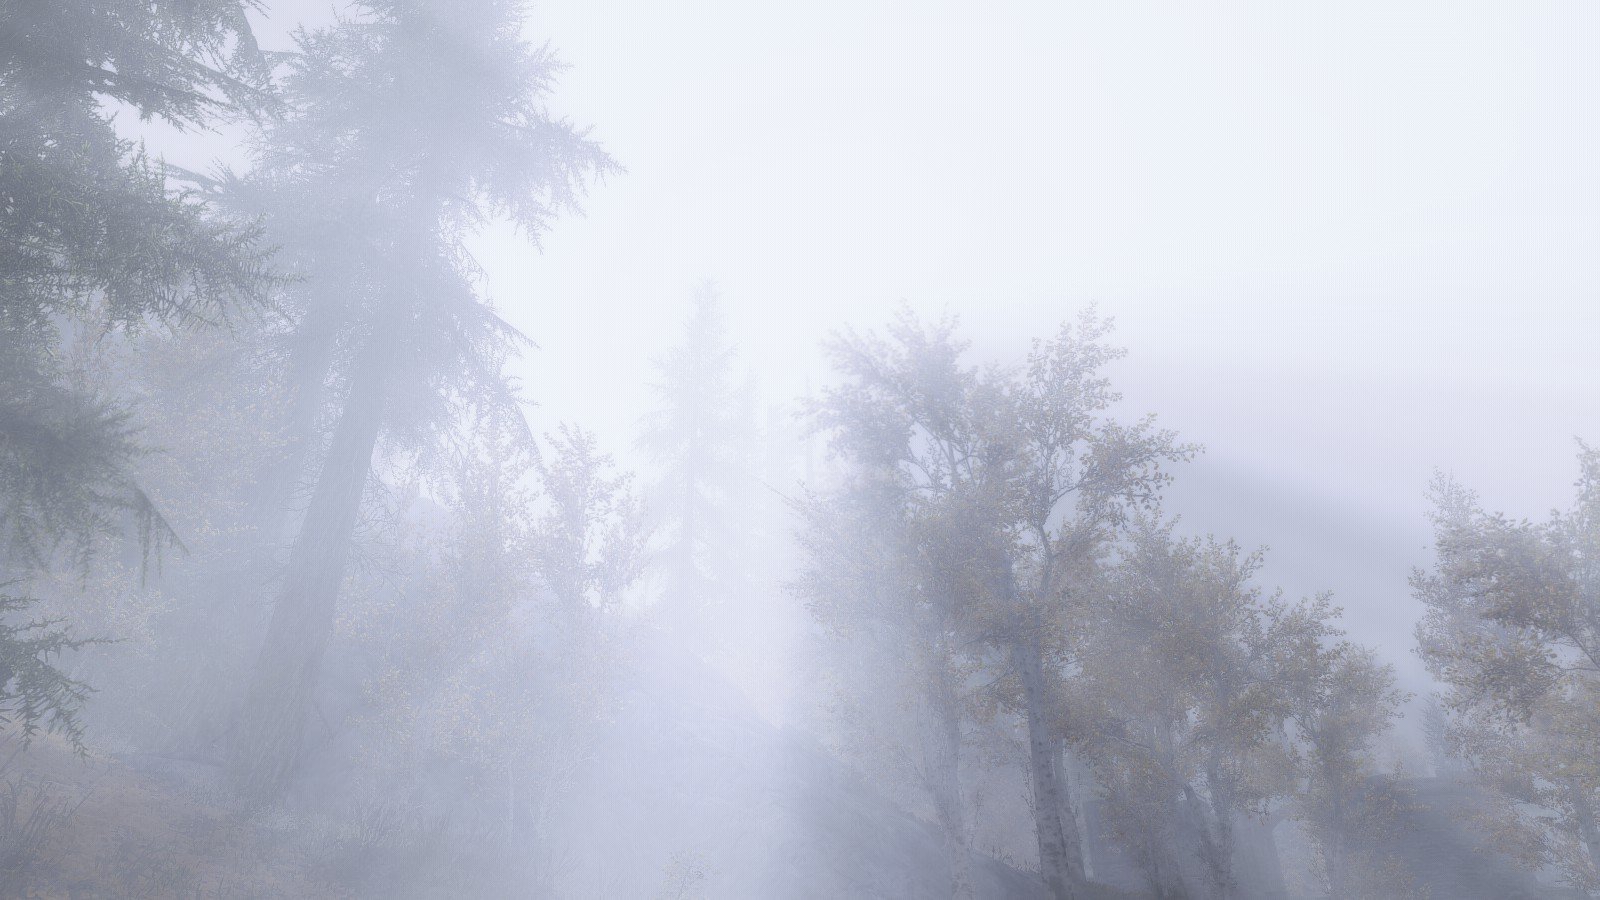 The Elder Scrolls V: Skyrim, Environment, Mist, Forest Wallpaper